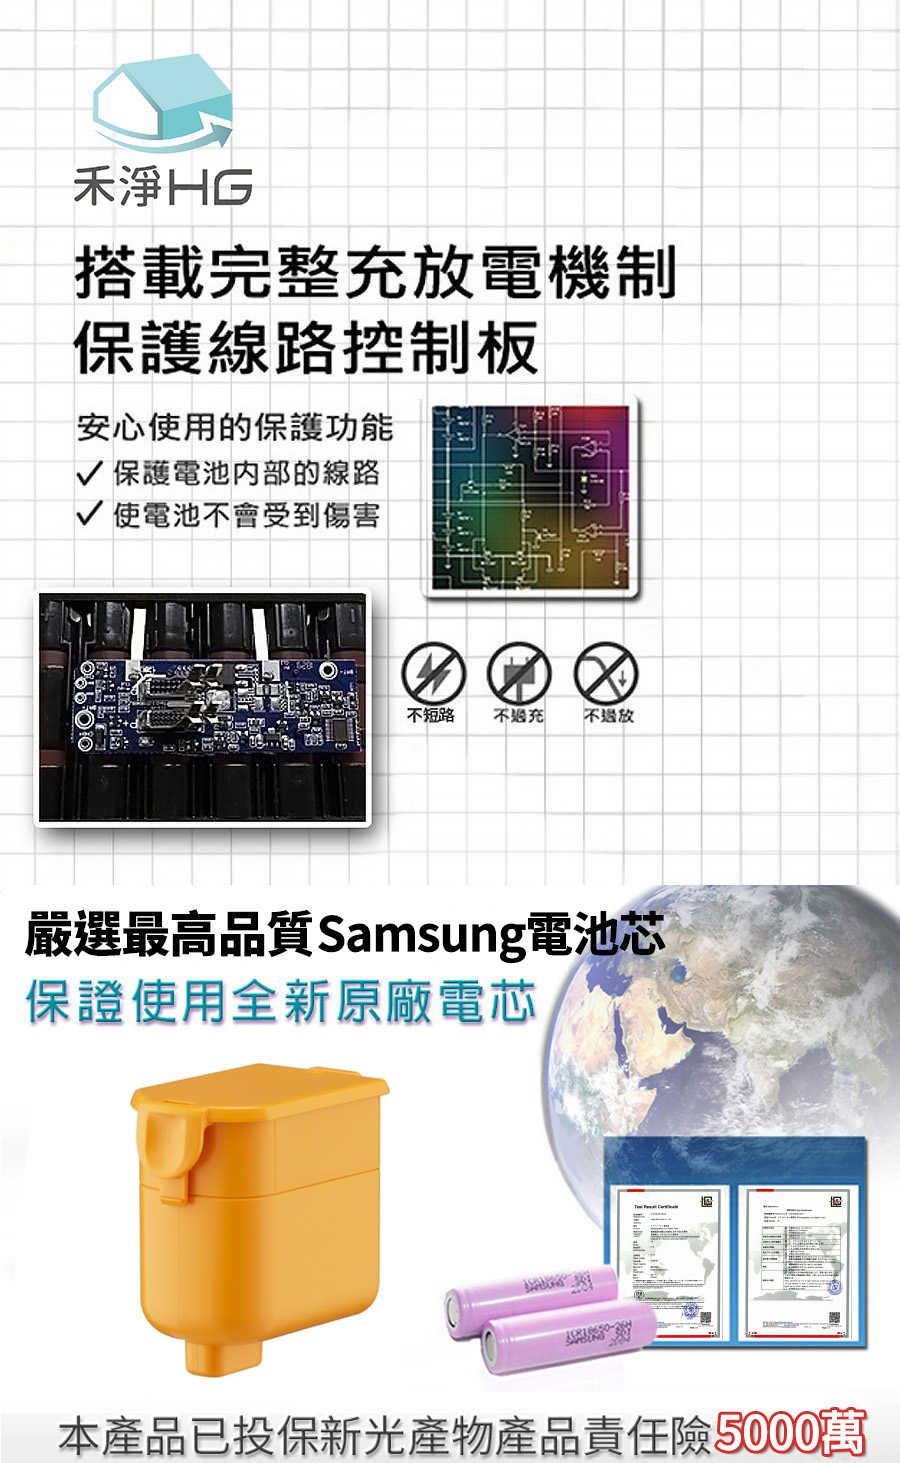 禾淨 LG A9 A9+系列吸塵器鋰電池 超大容量 3000mAh 副廠鋰電池 台灣製造保固一年